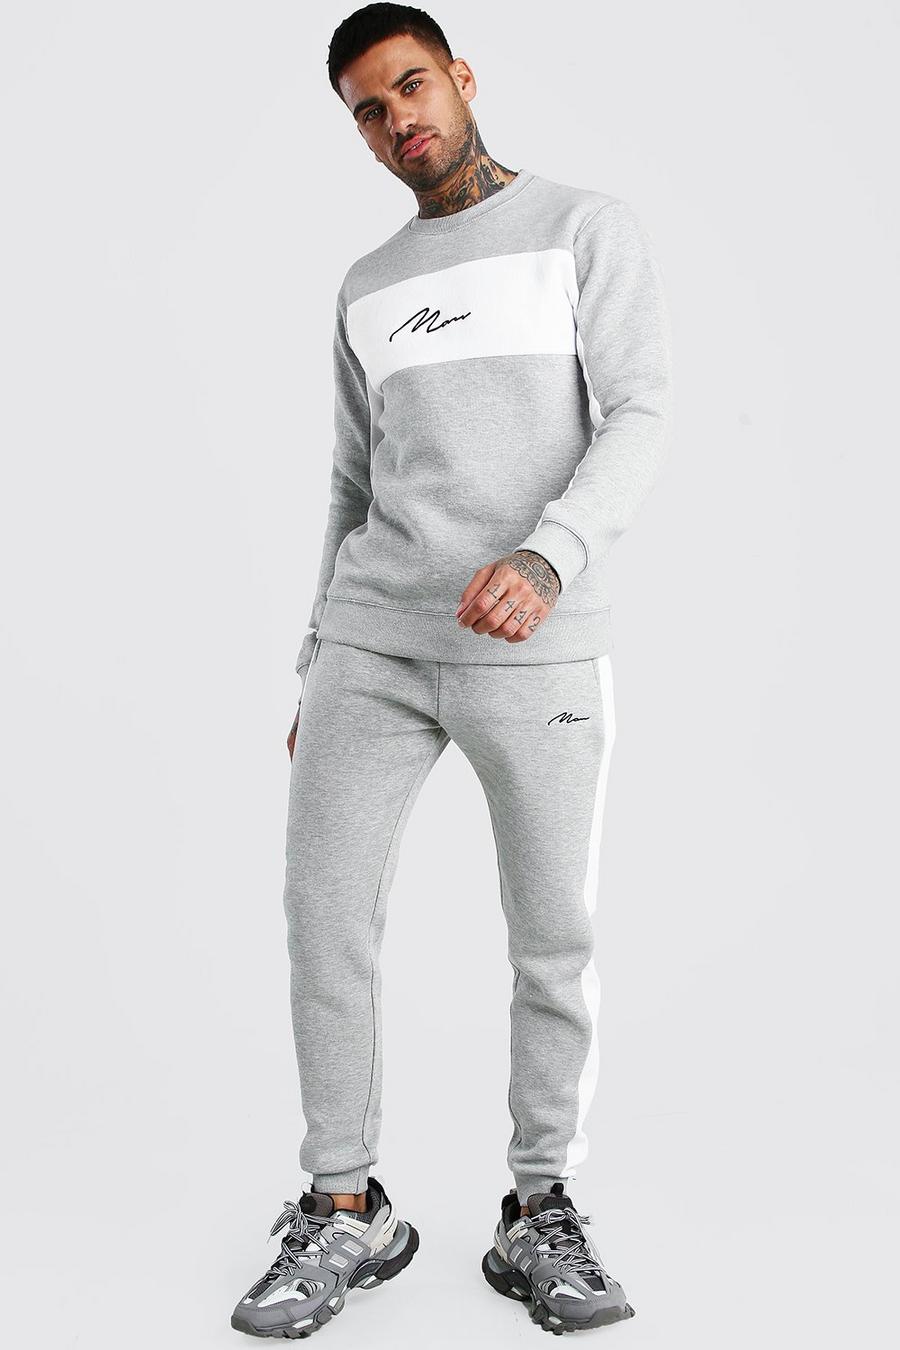 Colorblock-Trainingsanzug mit Pullover und MAN-Schriftzug, Grau meliert gris